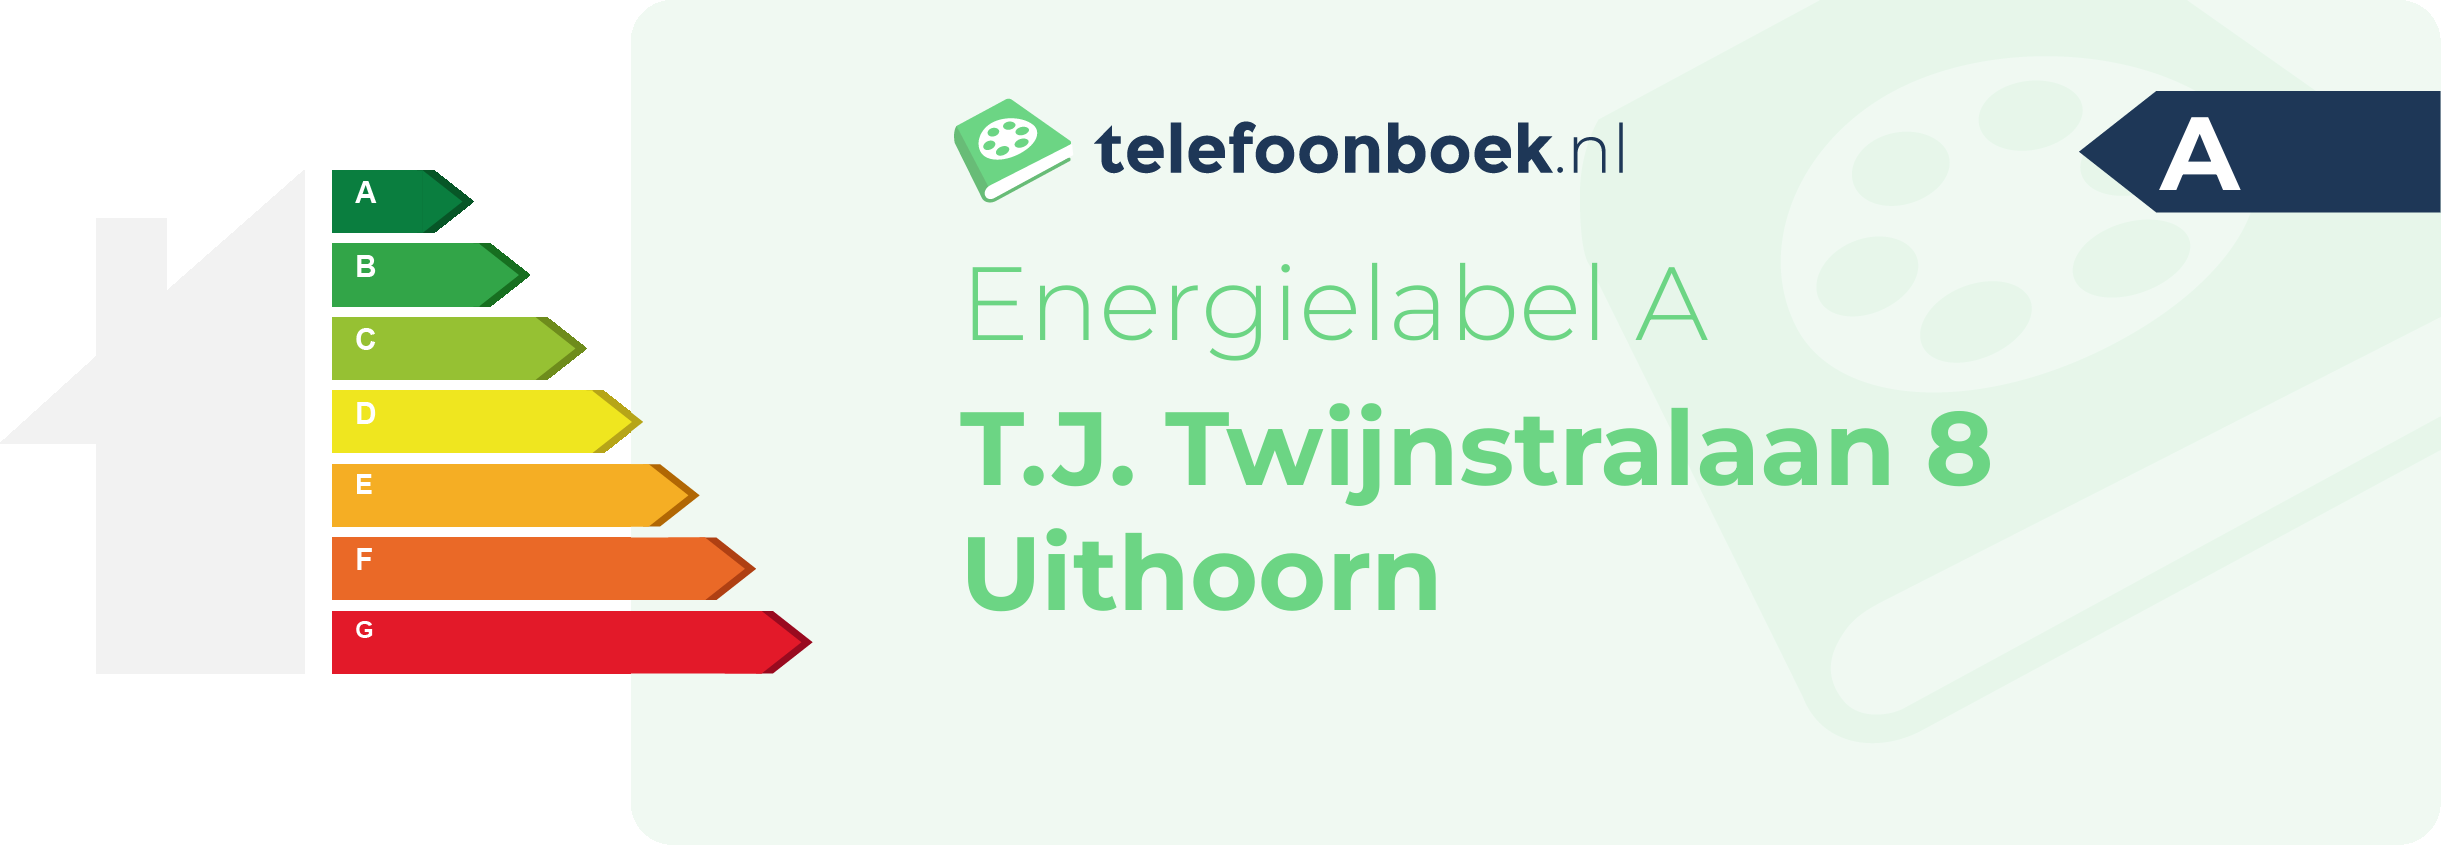 Energielabel T.J. Twijnstralaan 8 Uithoorn